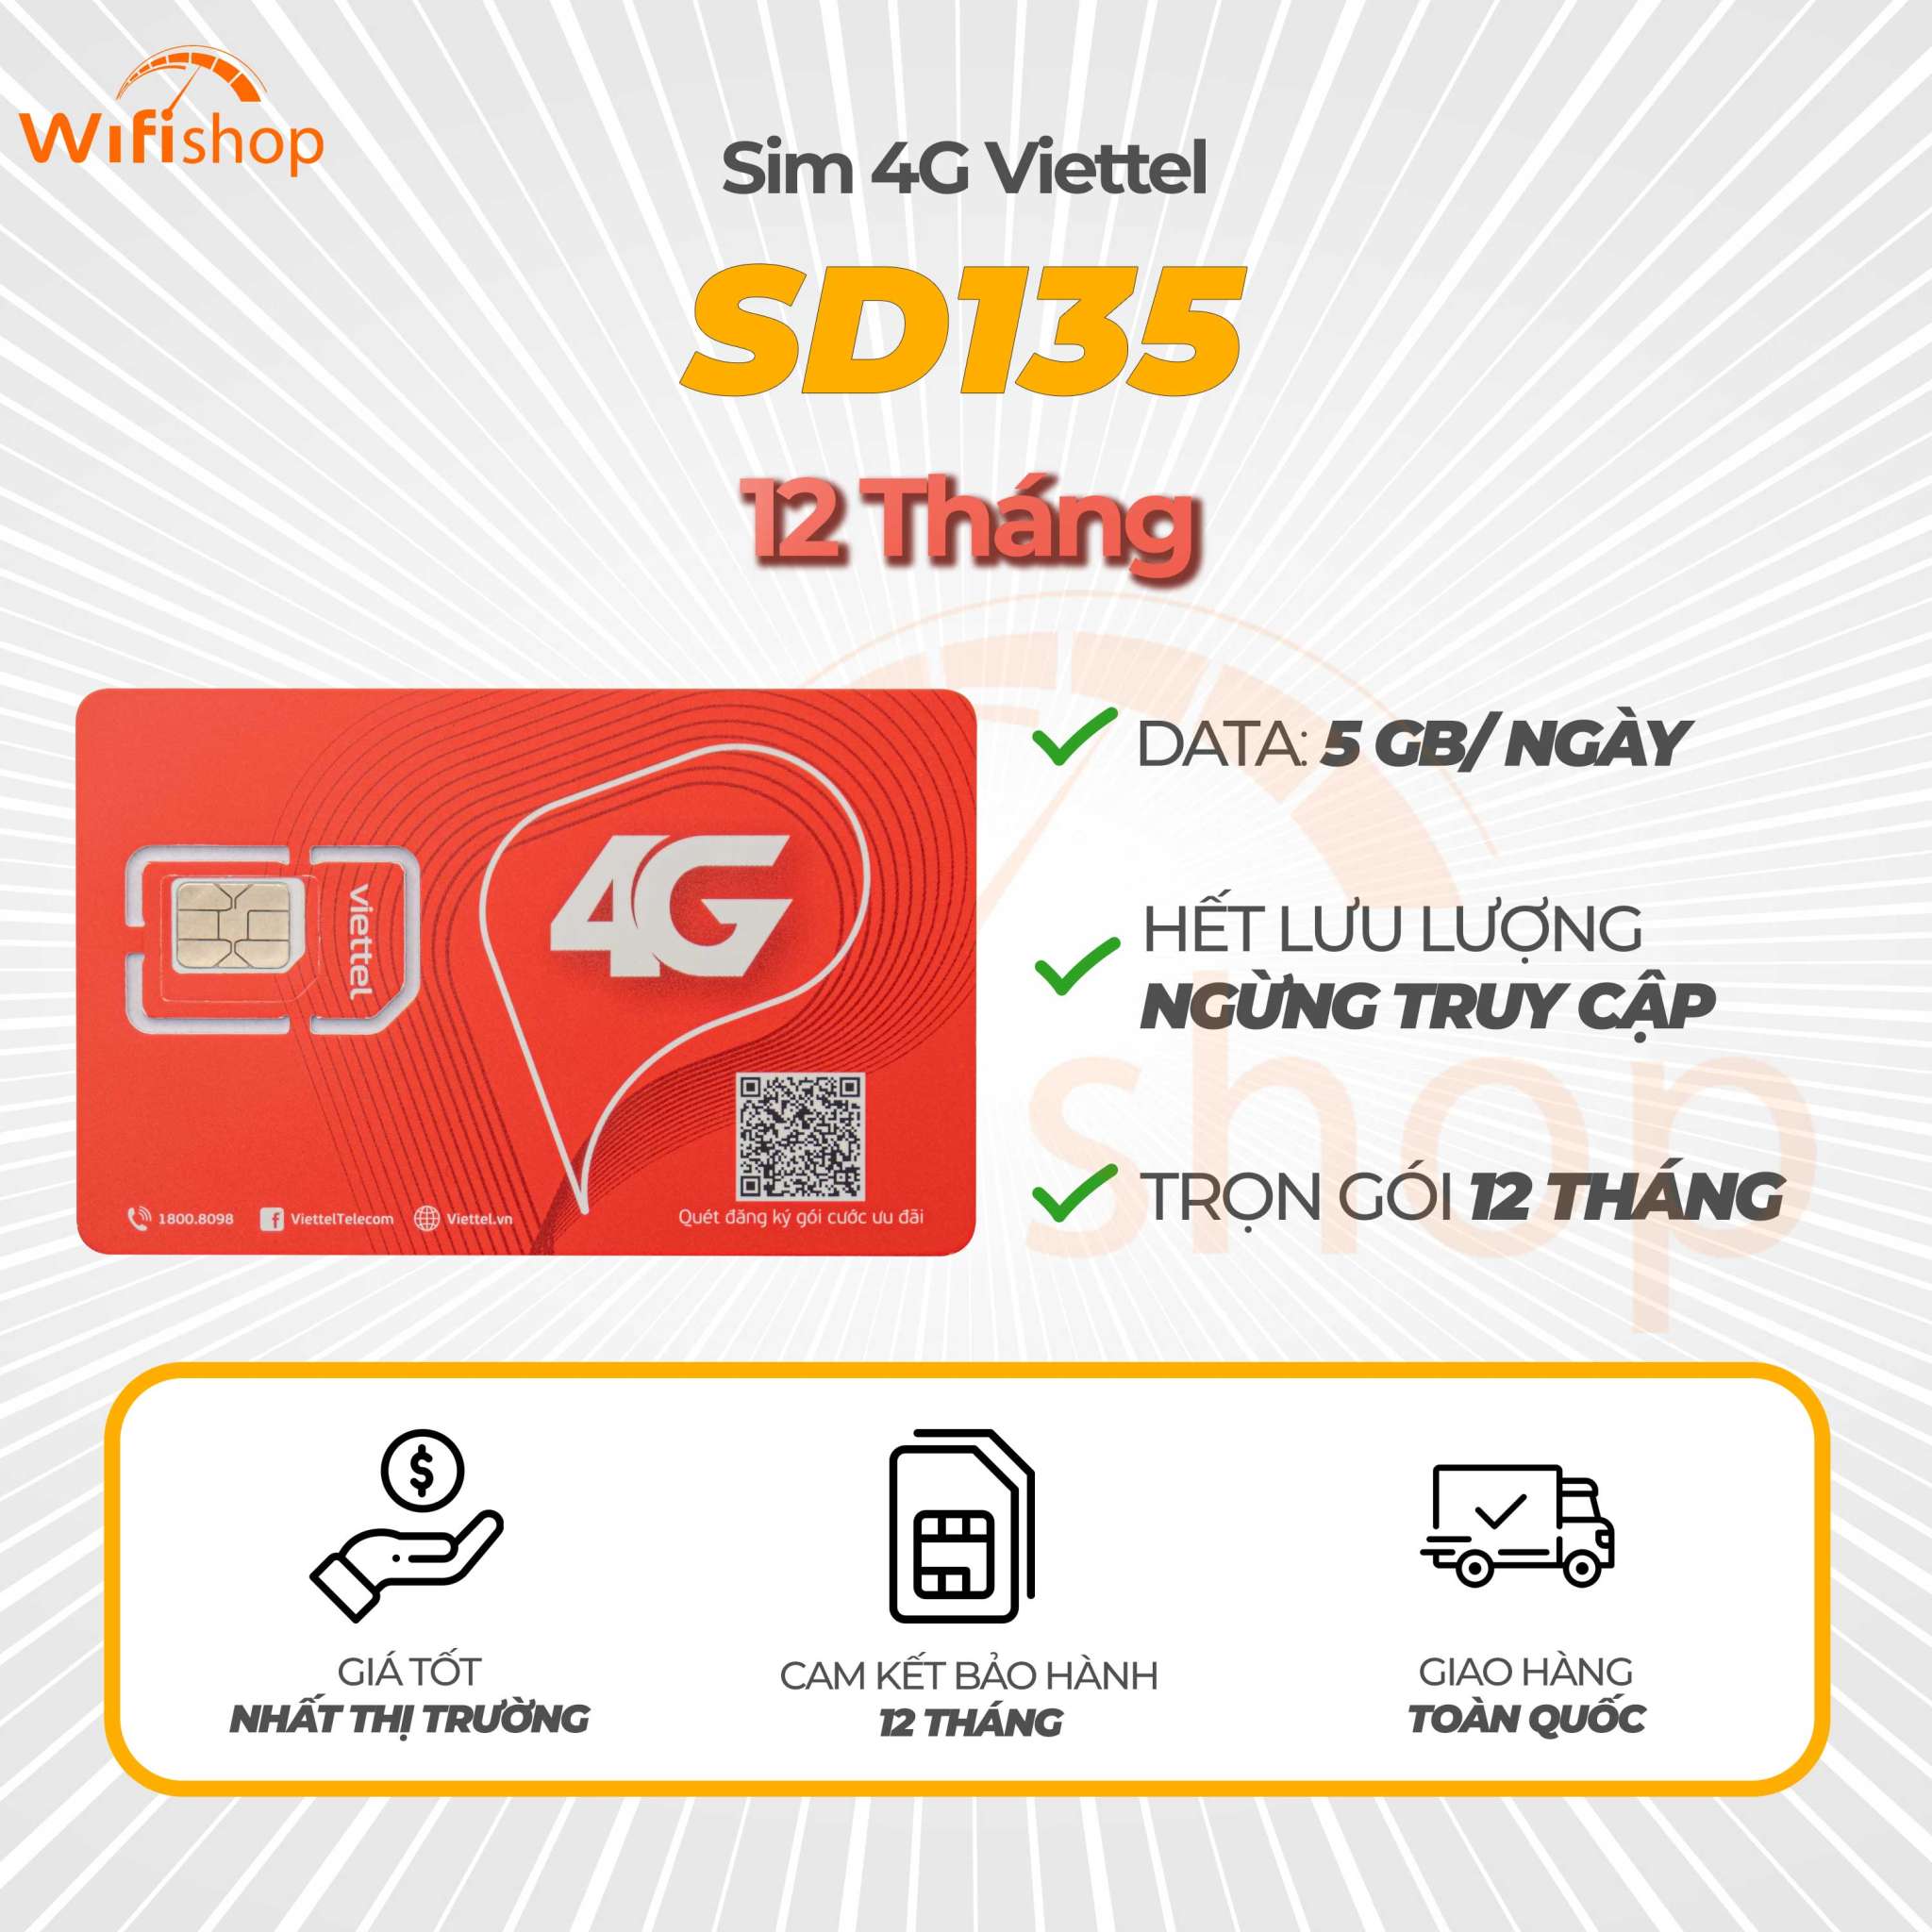 Sim Viettel SD135 5GB/Ngày (150GB/Tháng), Trọn gói 12 tháng